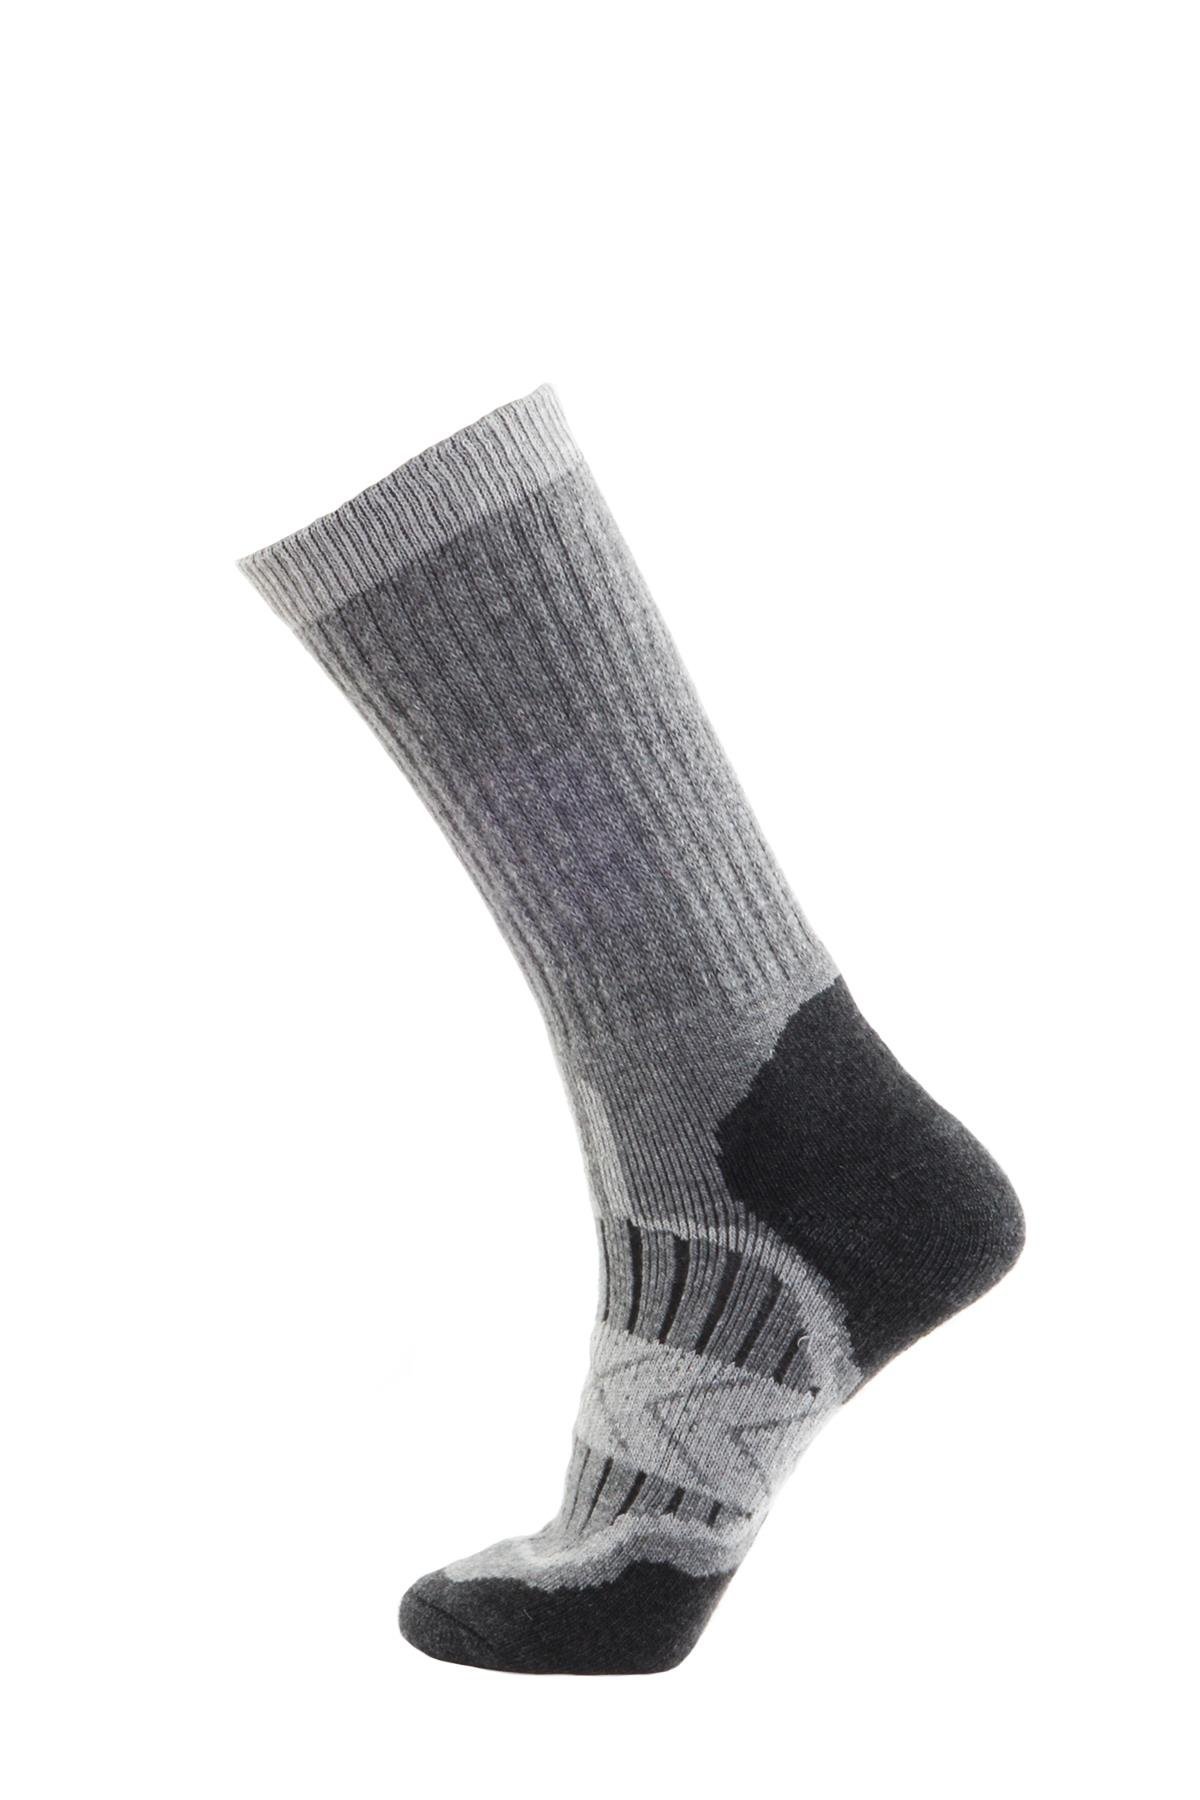 Panthzer Outdoor Socks Gri/Siyah